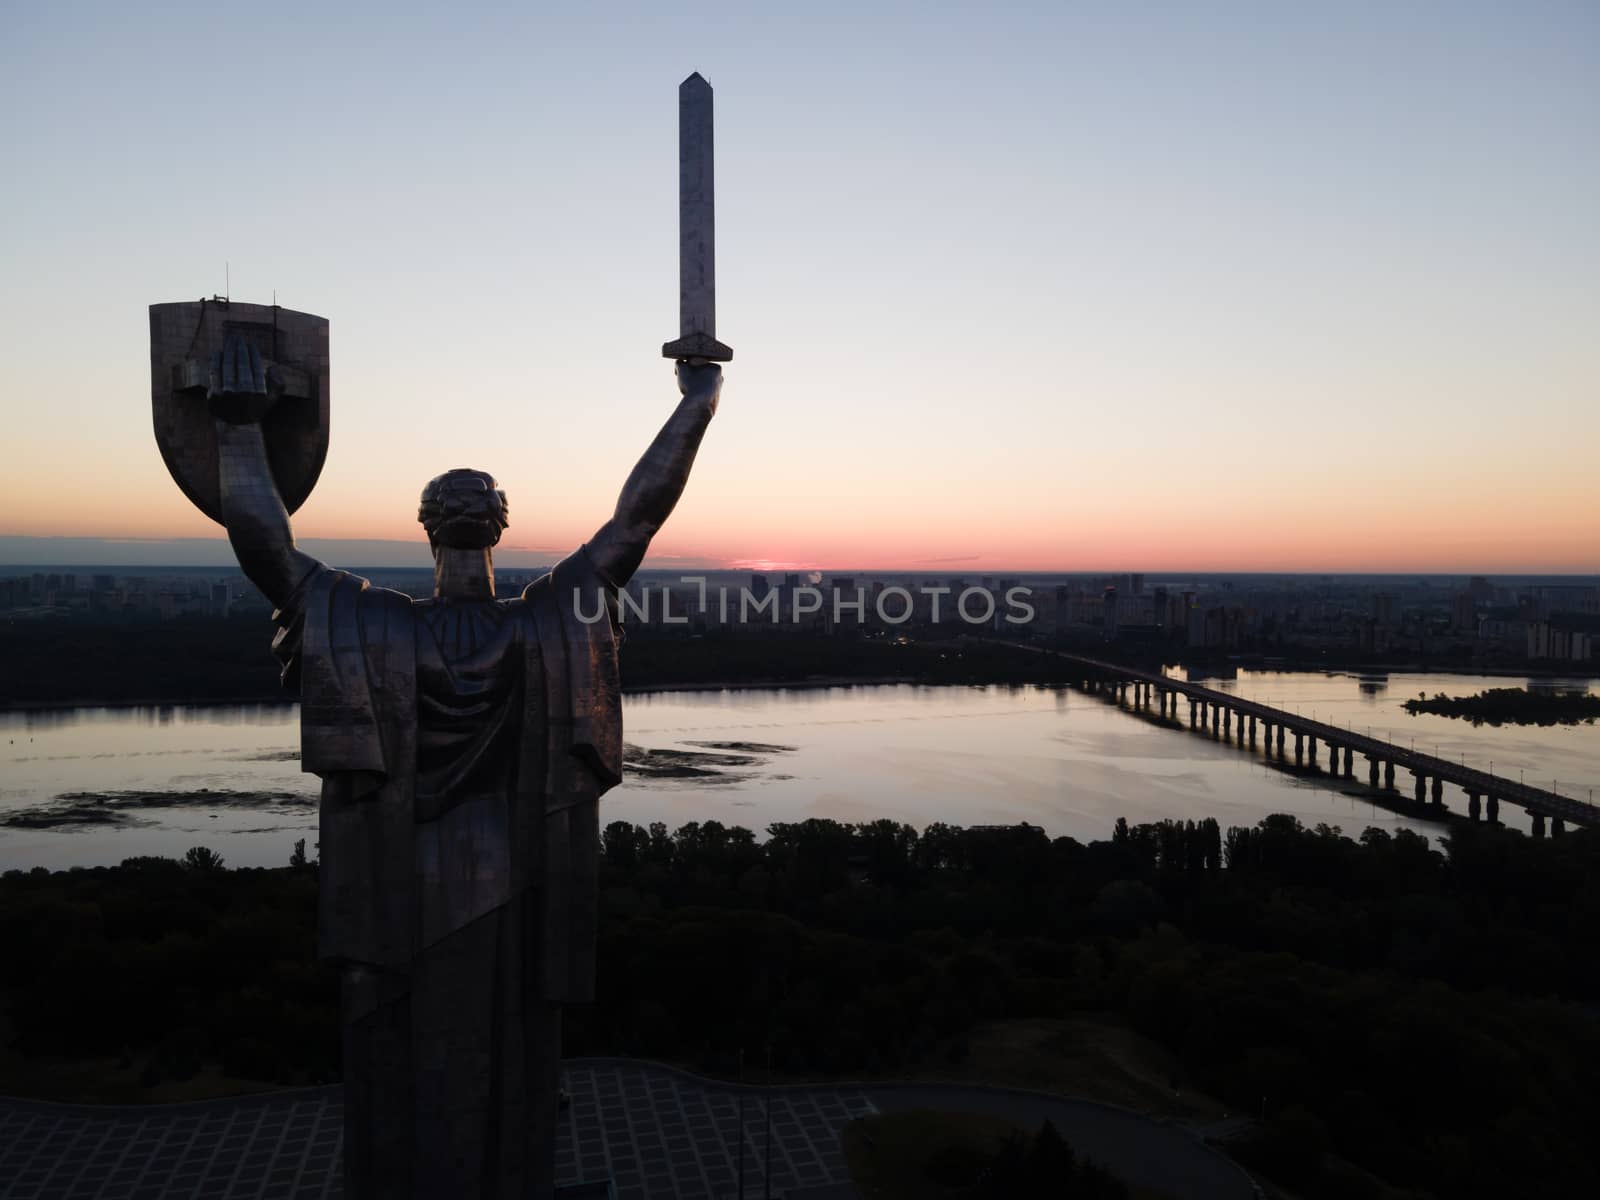 Monument Motherland in the morning. Kyiv, Ukraine. Aerial view by Mykola_Kondrashev